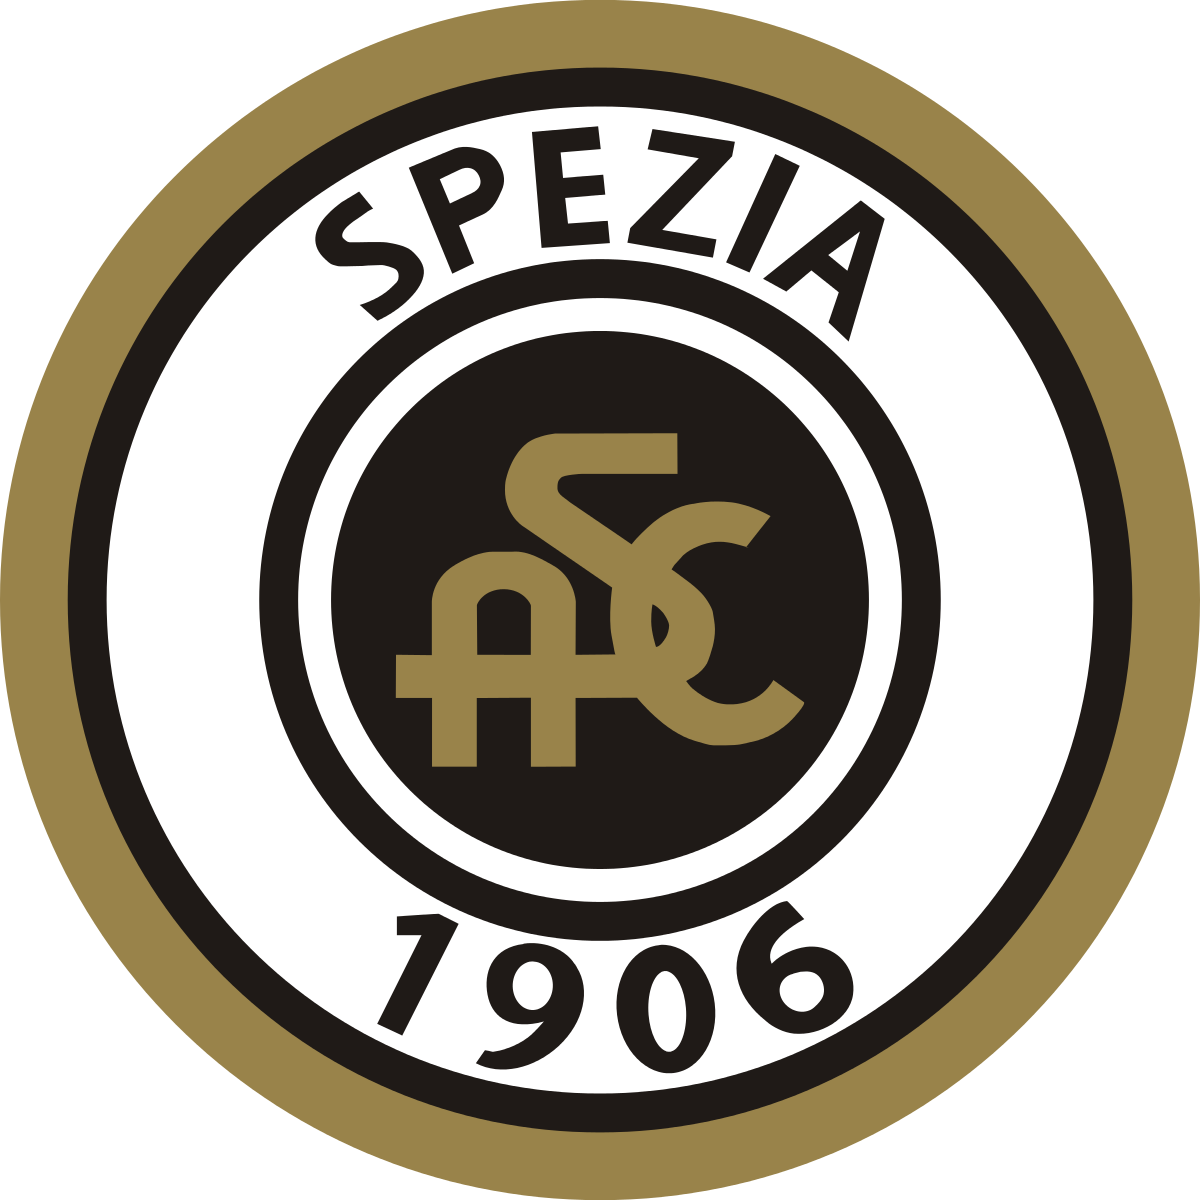 Maglia Spezia Calcio